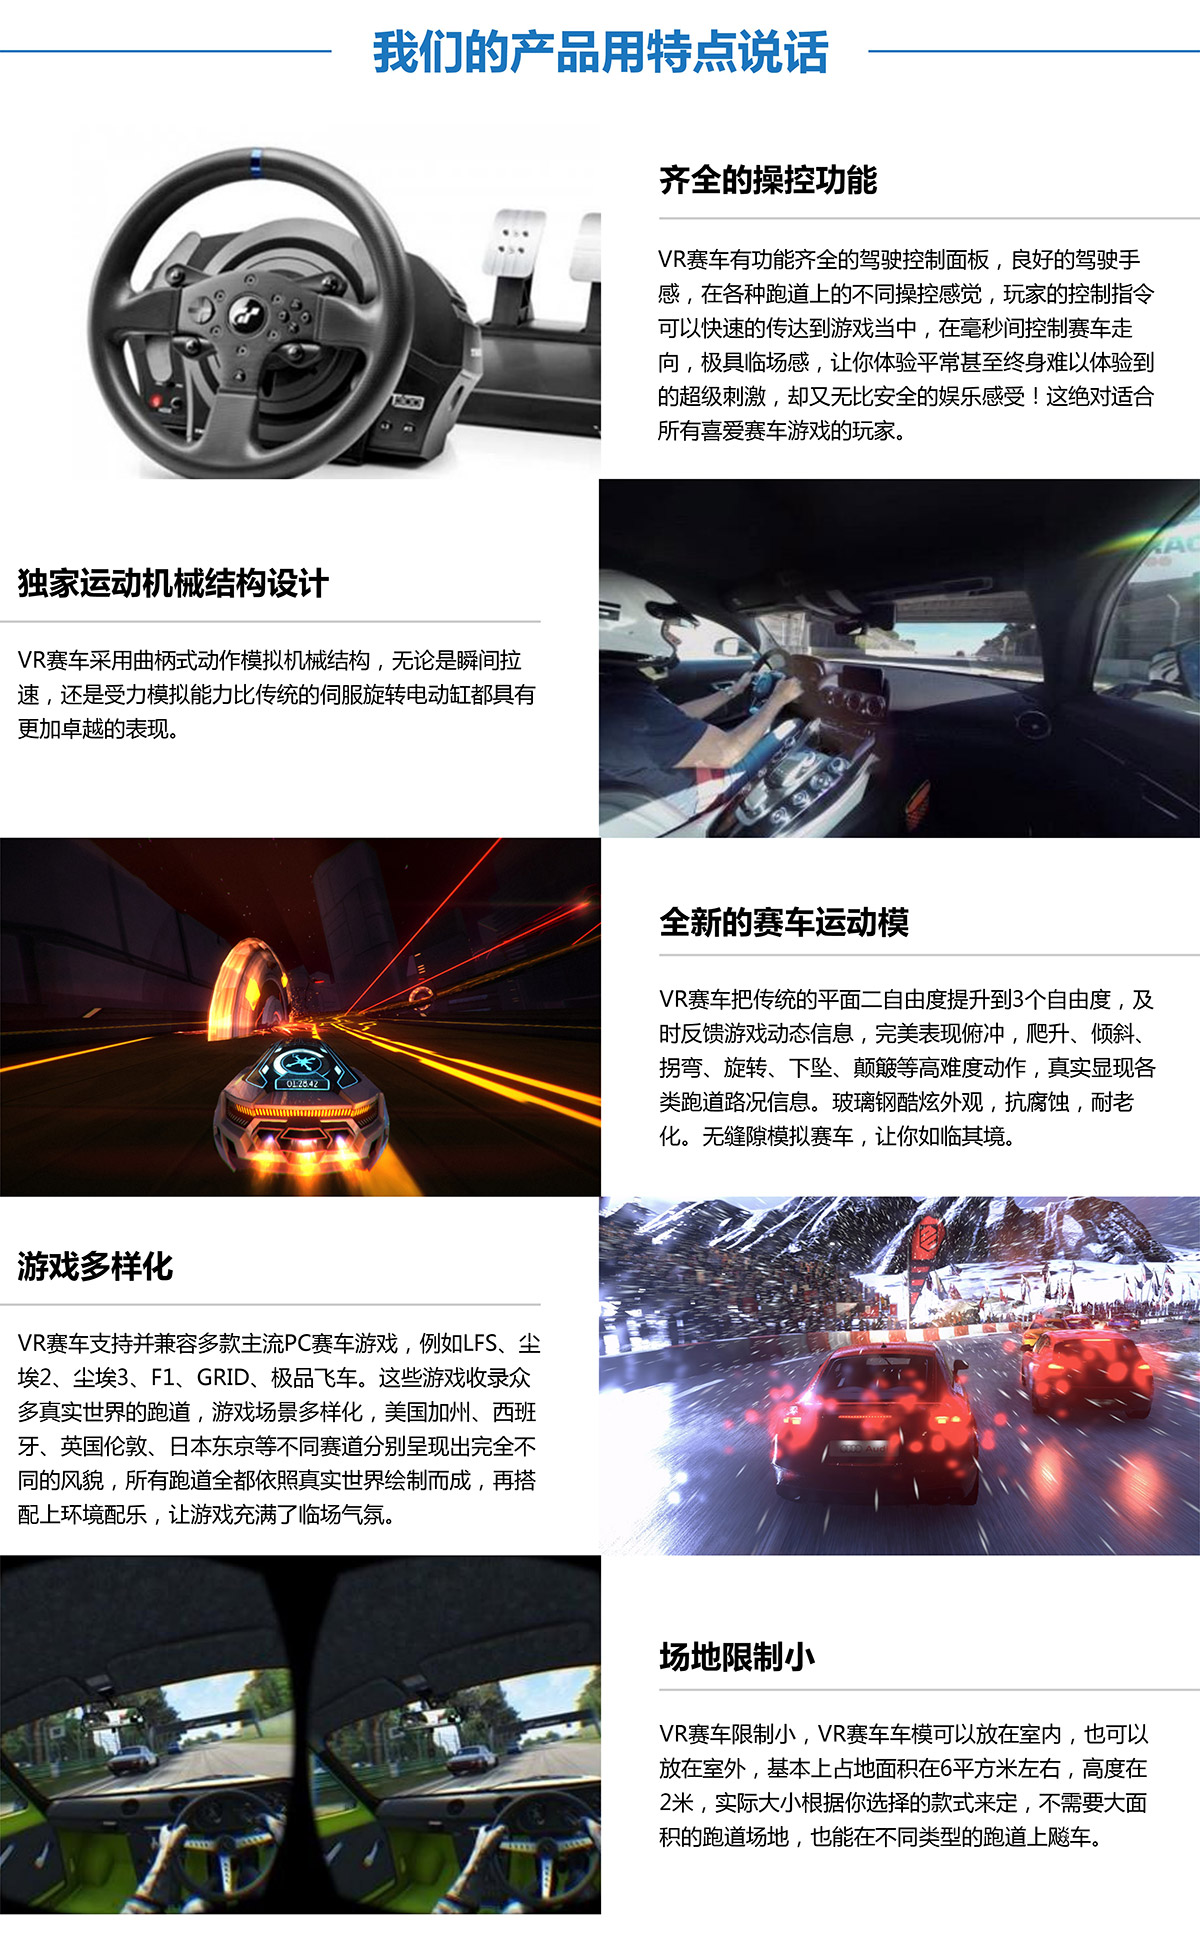 巨幕影院虚拟VR赛车产品用特点说话.jpg